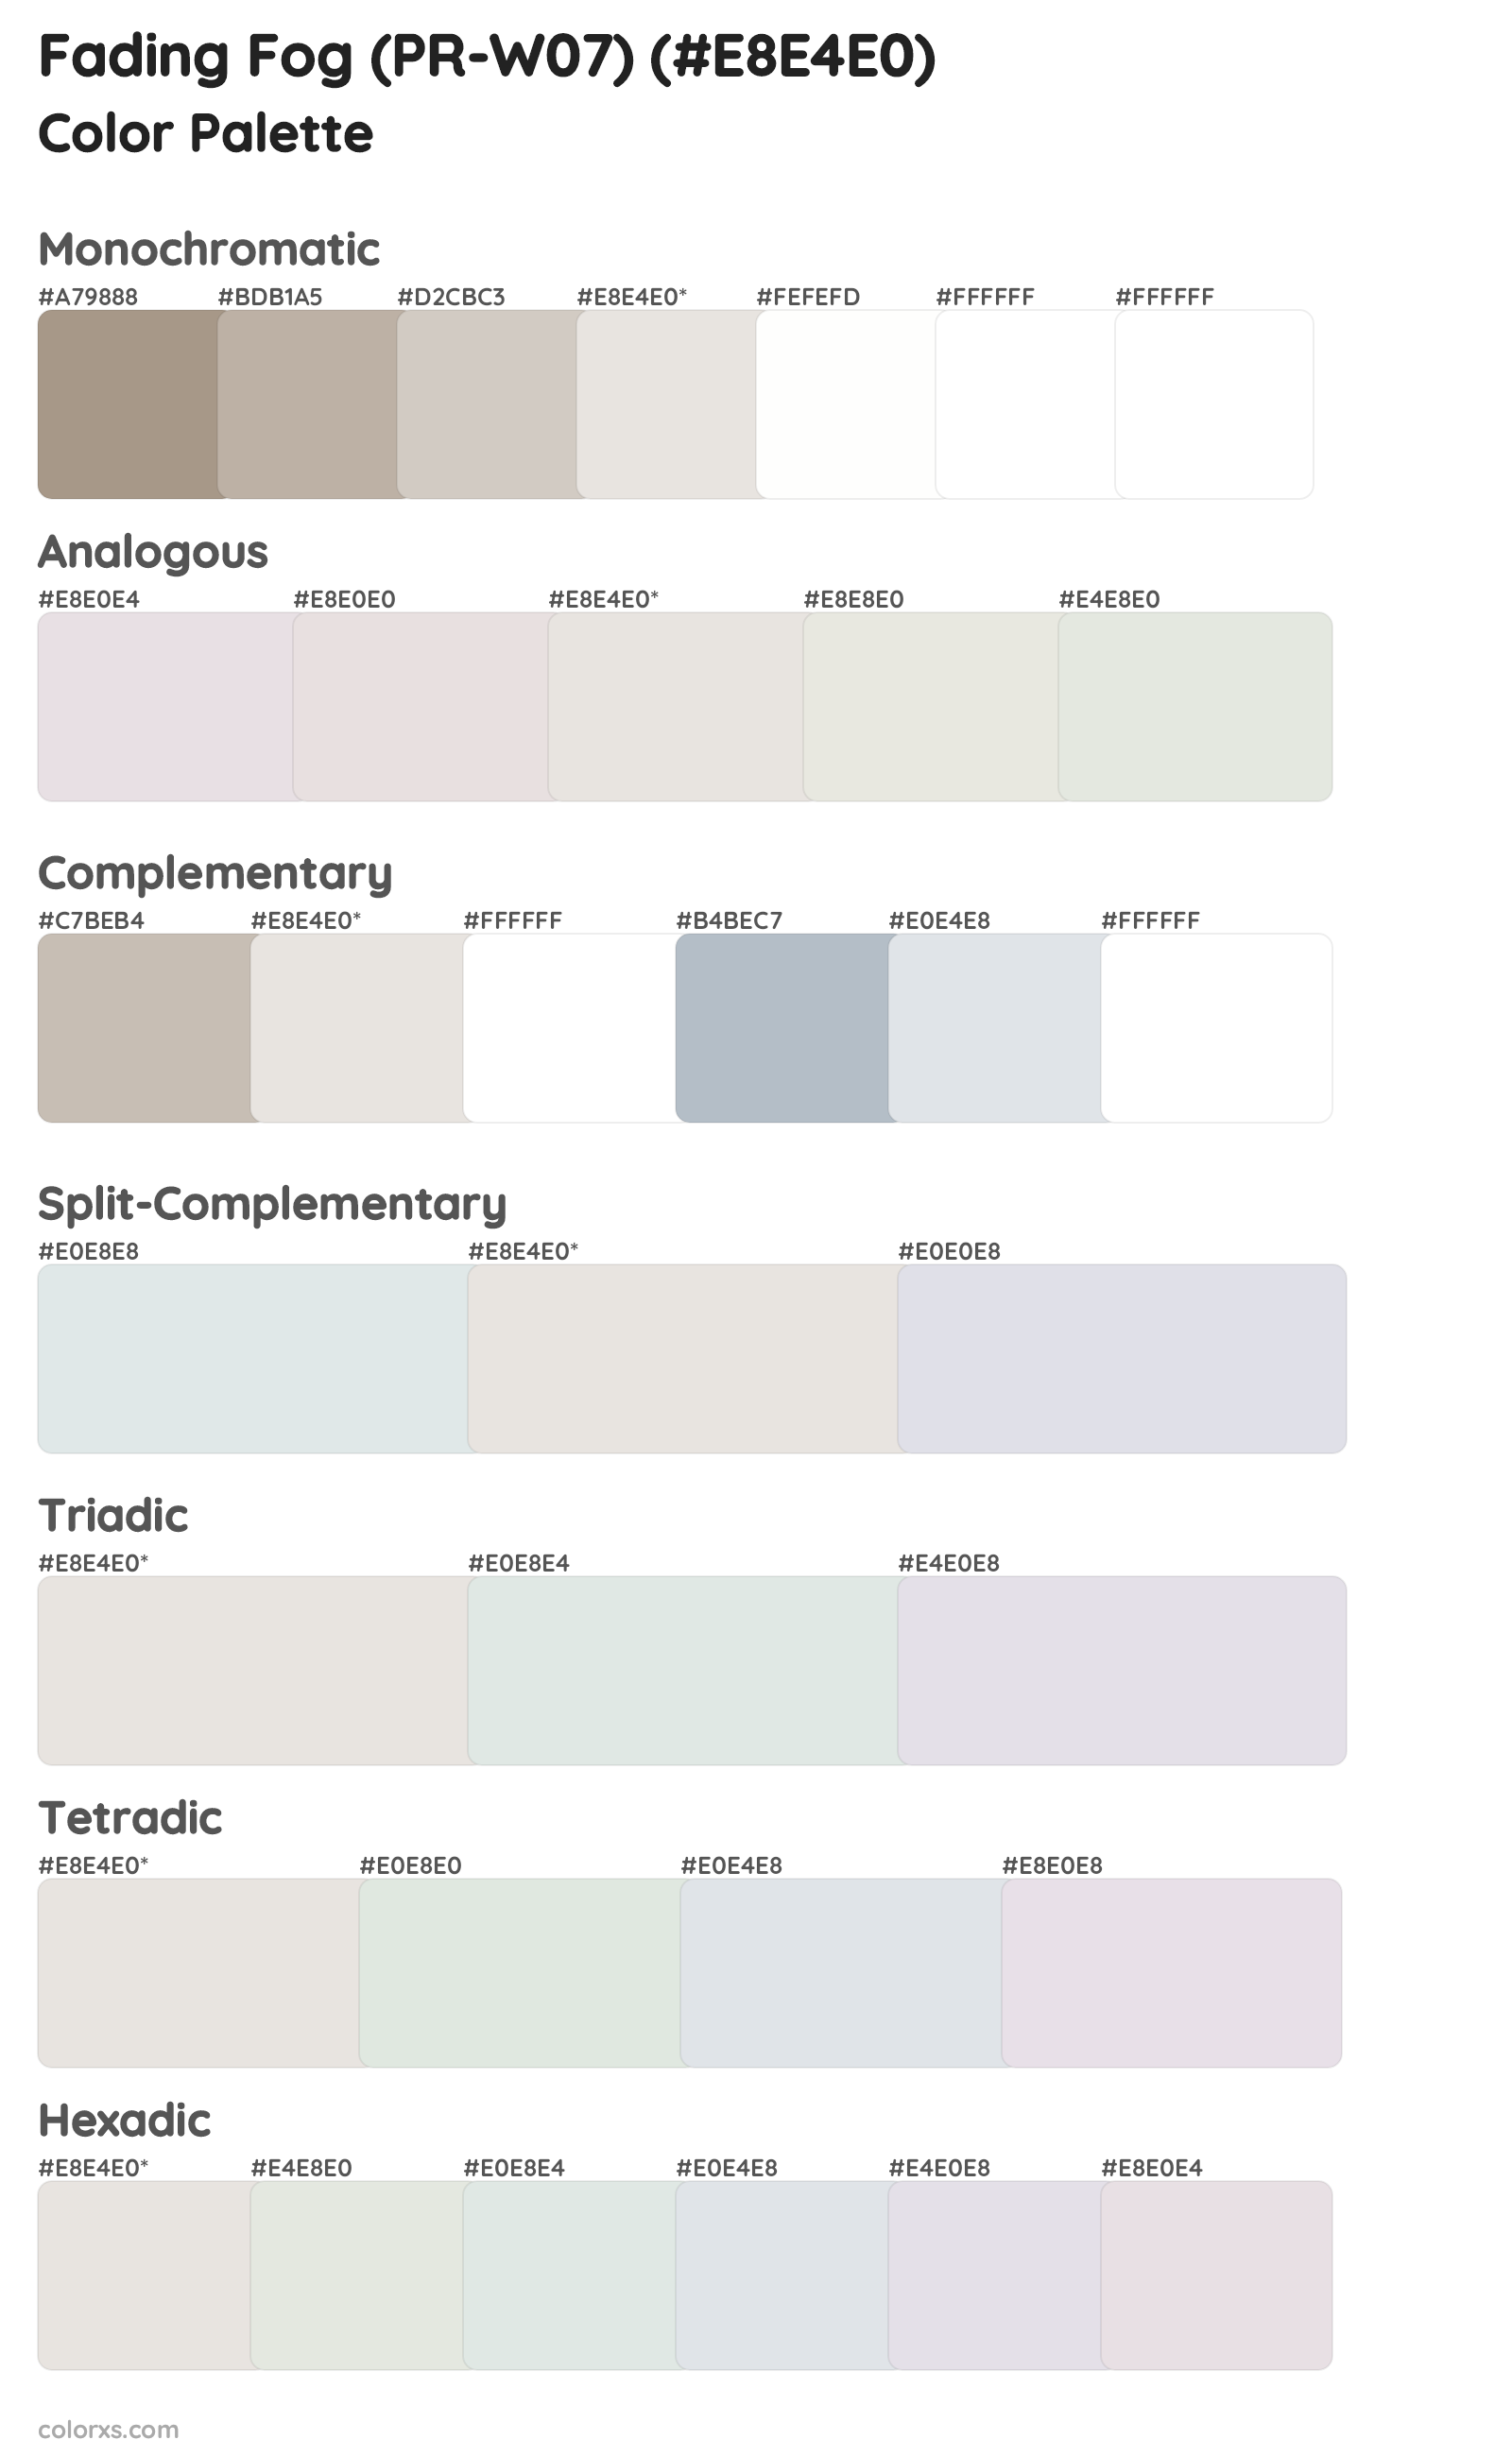 Fading Fog (PR-W07) Color Scheme Palettes